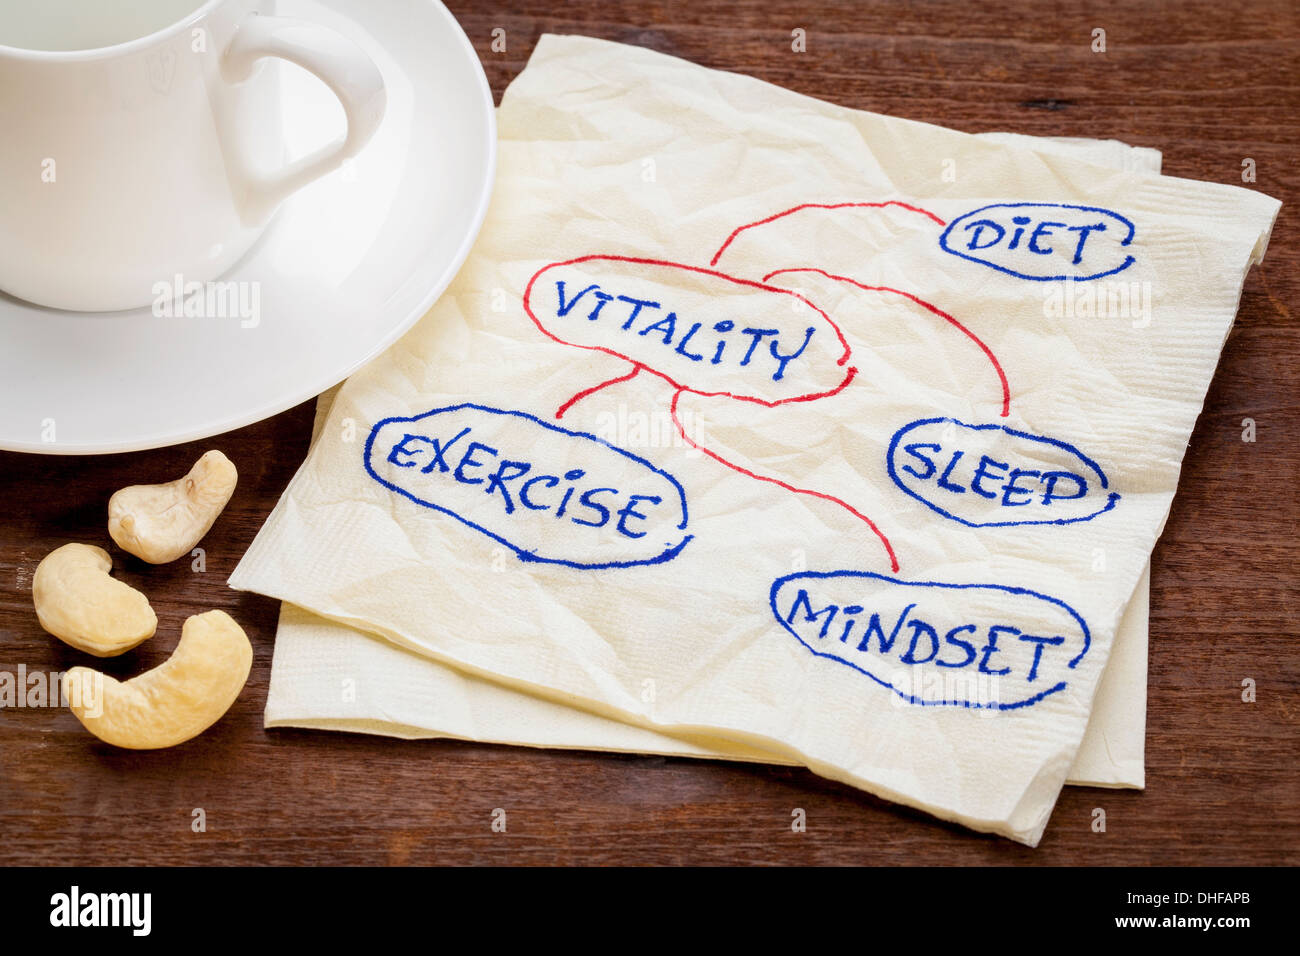 L'alimentation, le sommeil, l'exercice d'esprit et de vitalité - concept - un croquis sur une serviette avec tasse de café Banque D'Images